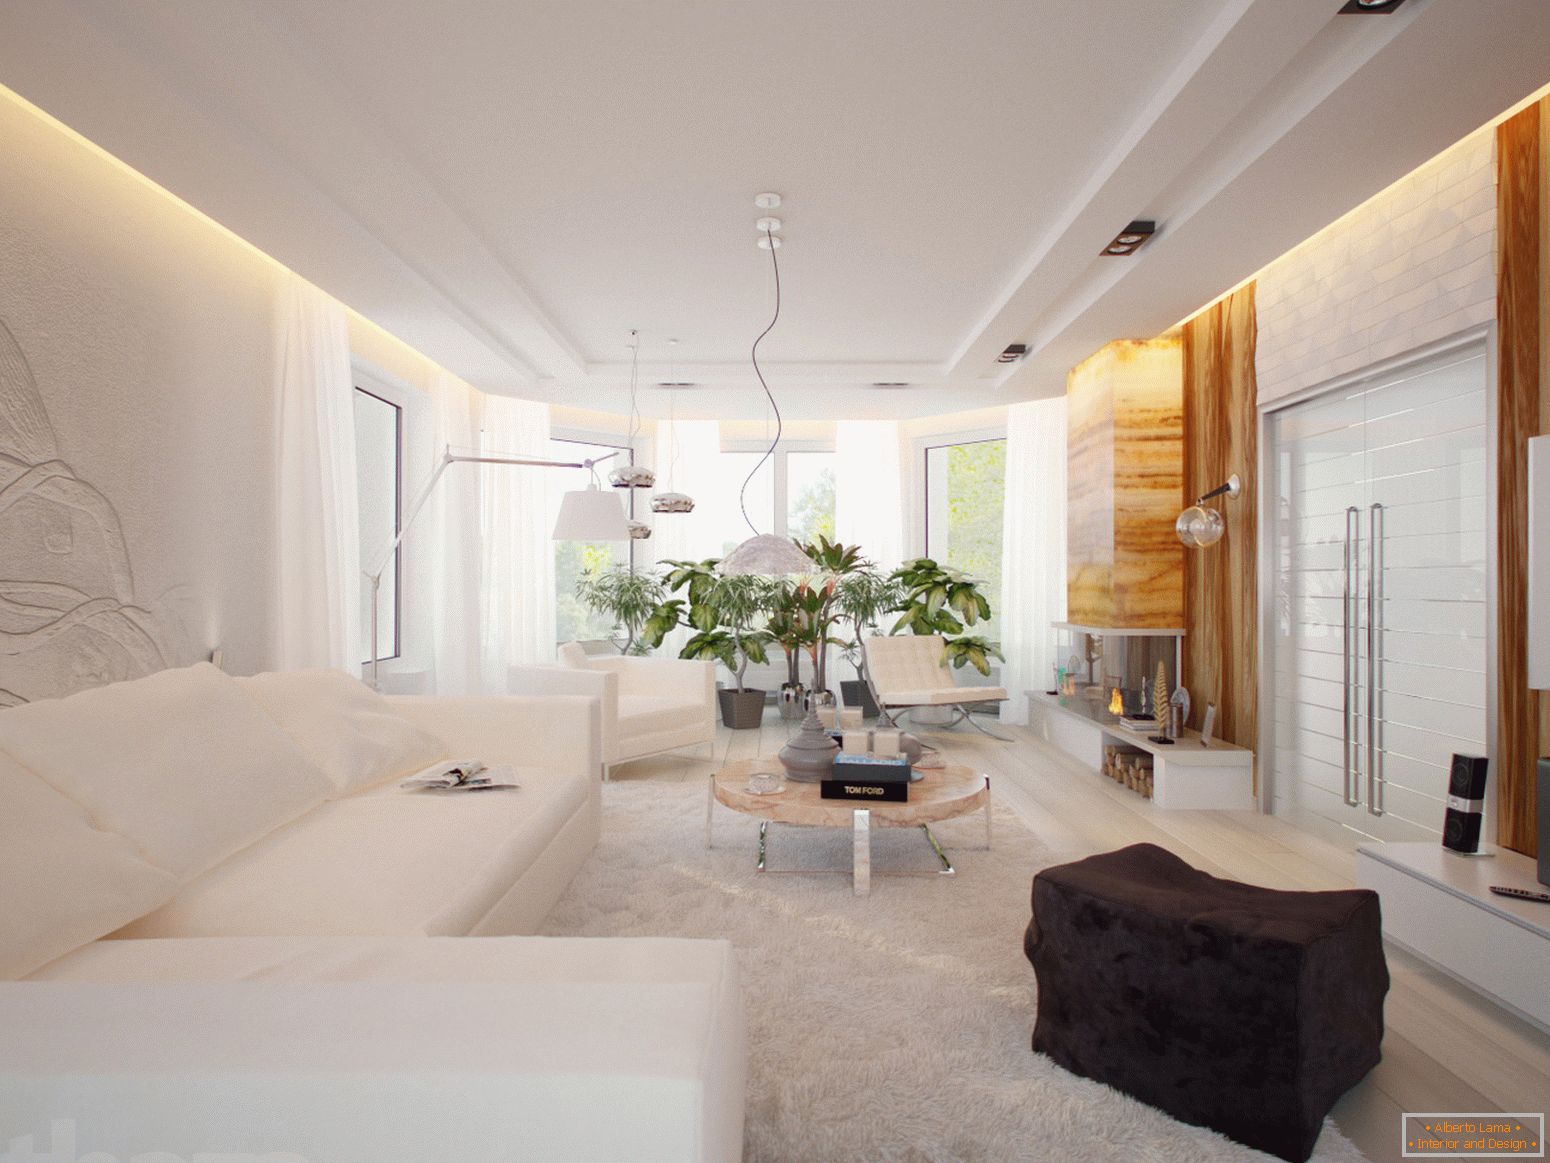 O cameră de oaspeți spațioasă și luminoasă, în stil minimalist, este un excelent exemplu de mobilier amenajat în mod corespunzător.